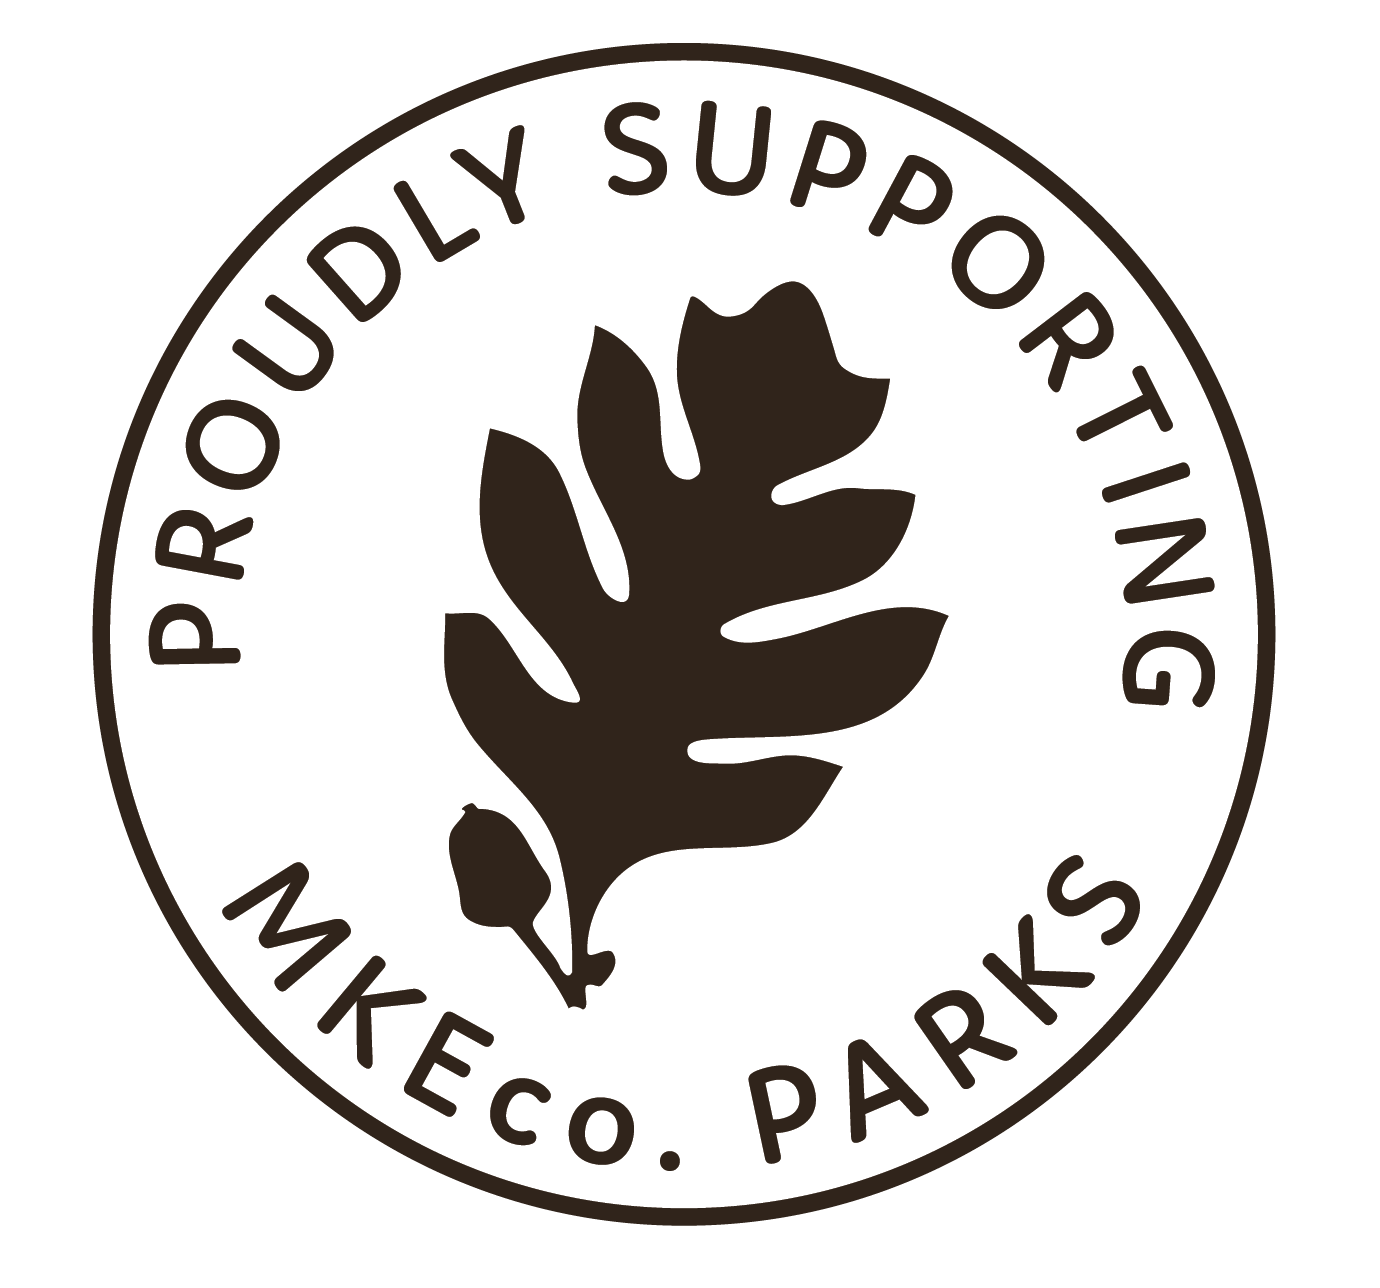 Mil Co Parks logo-Black-white